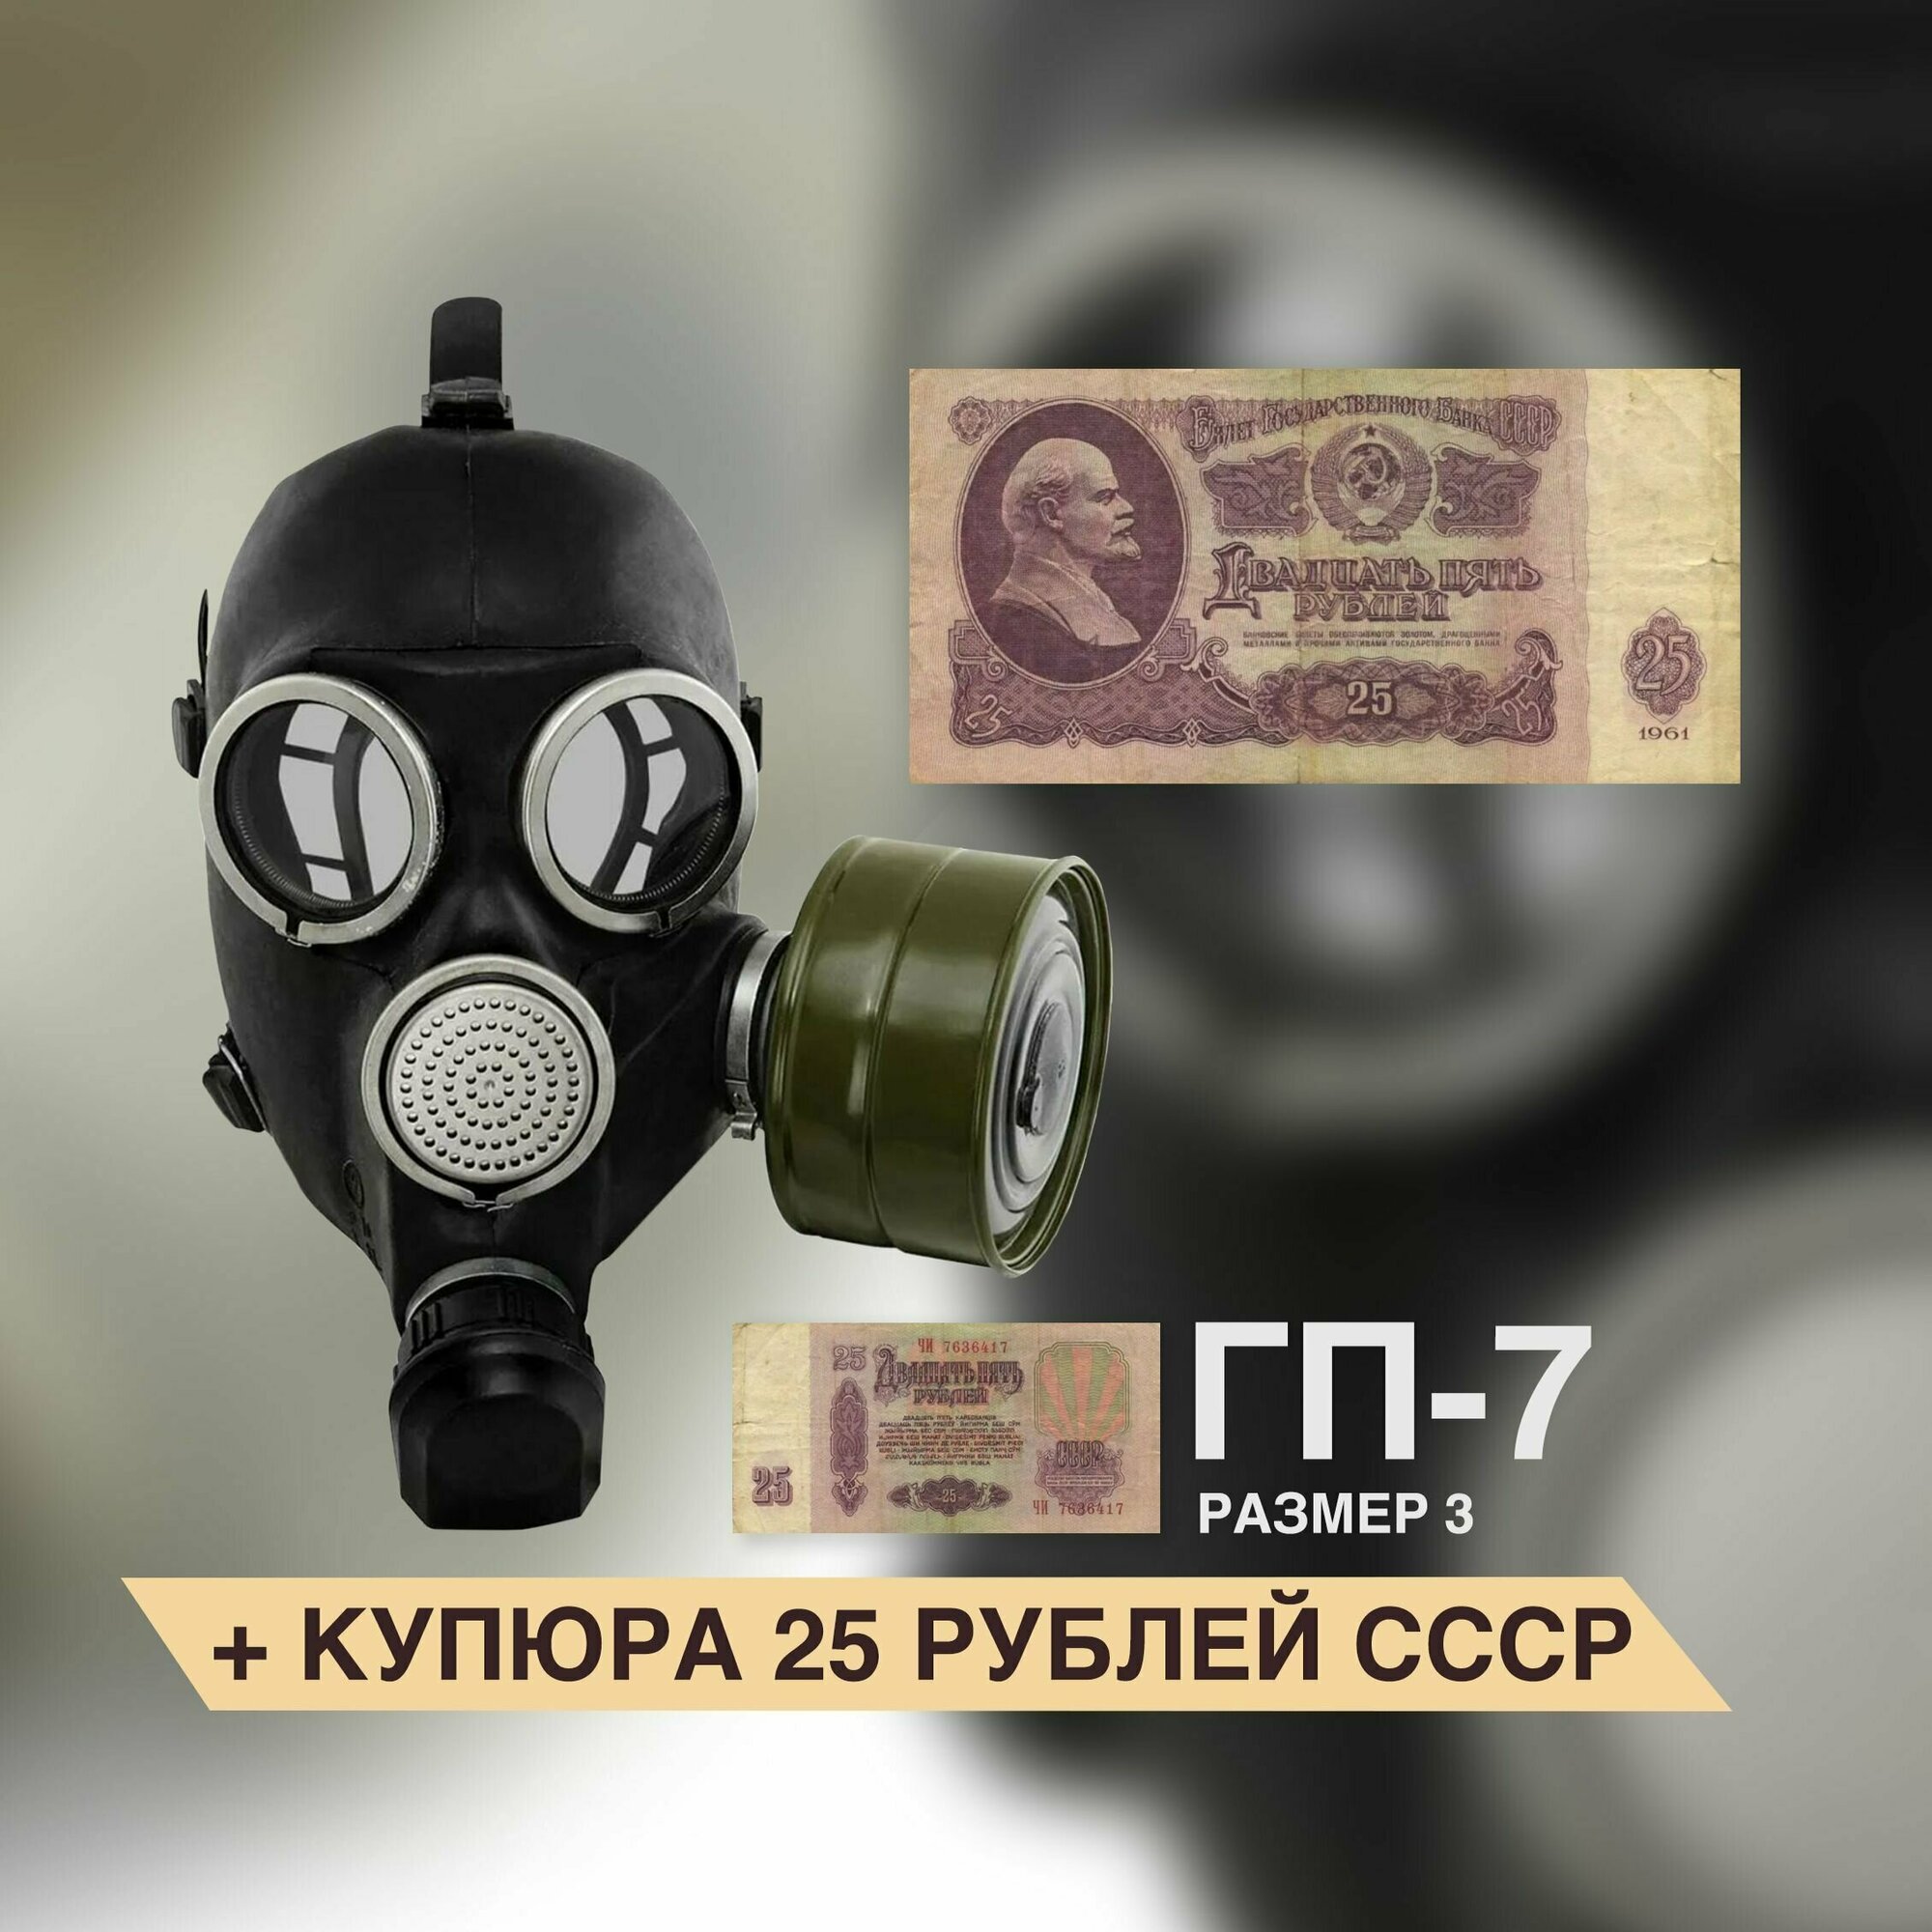 Противогаз ГП-7 с купюрой 25 рублей в комплекте